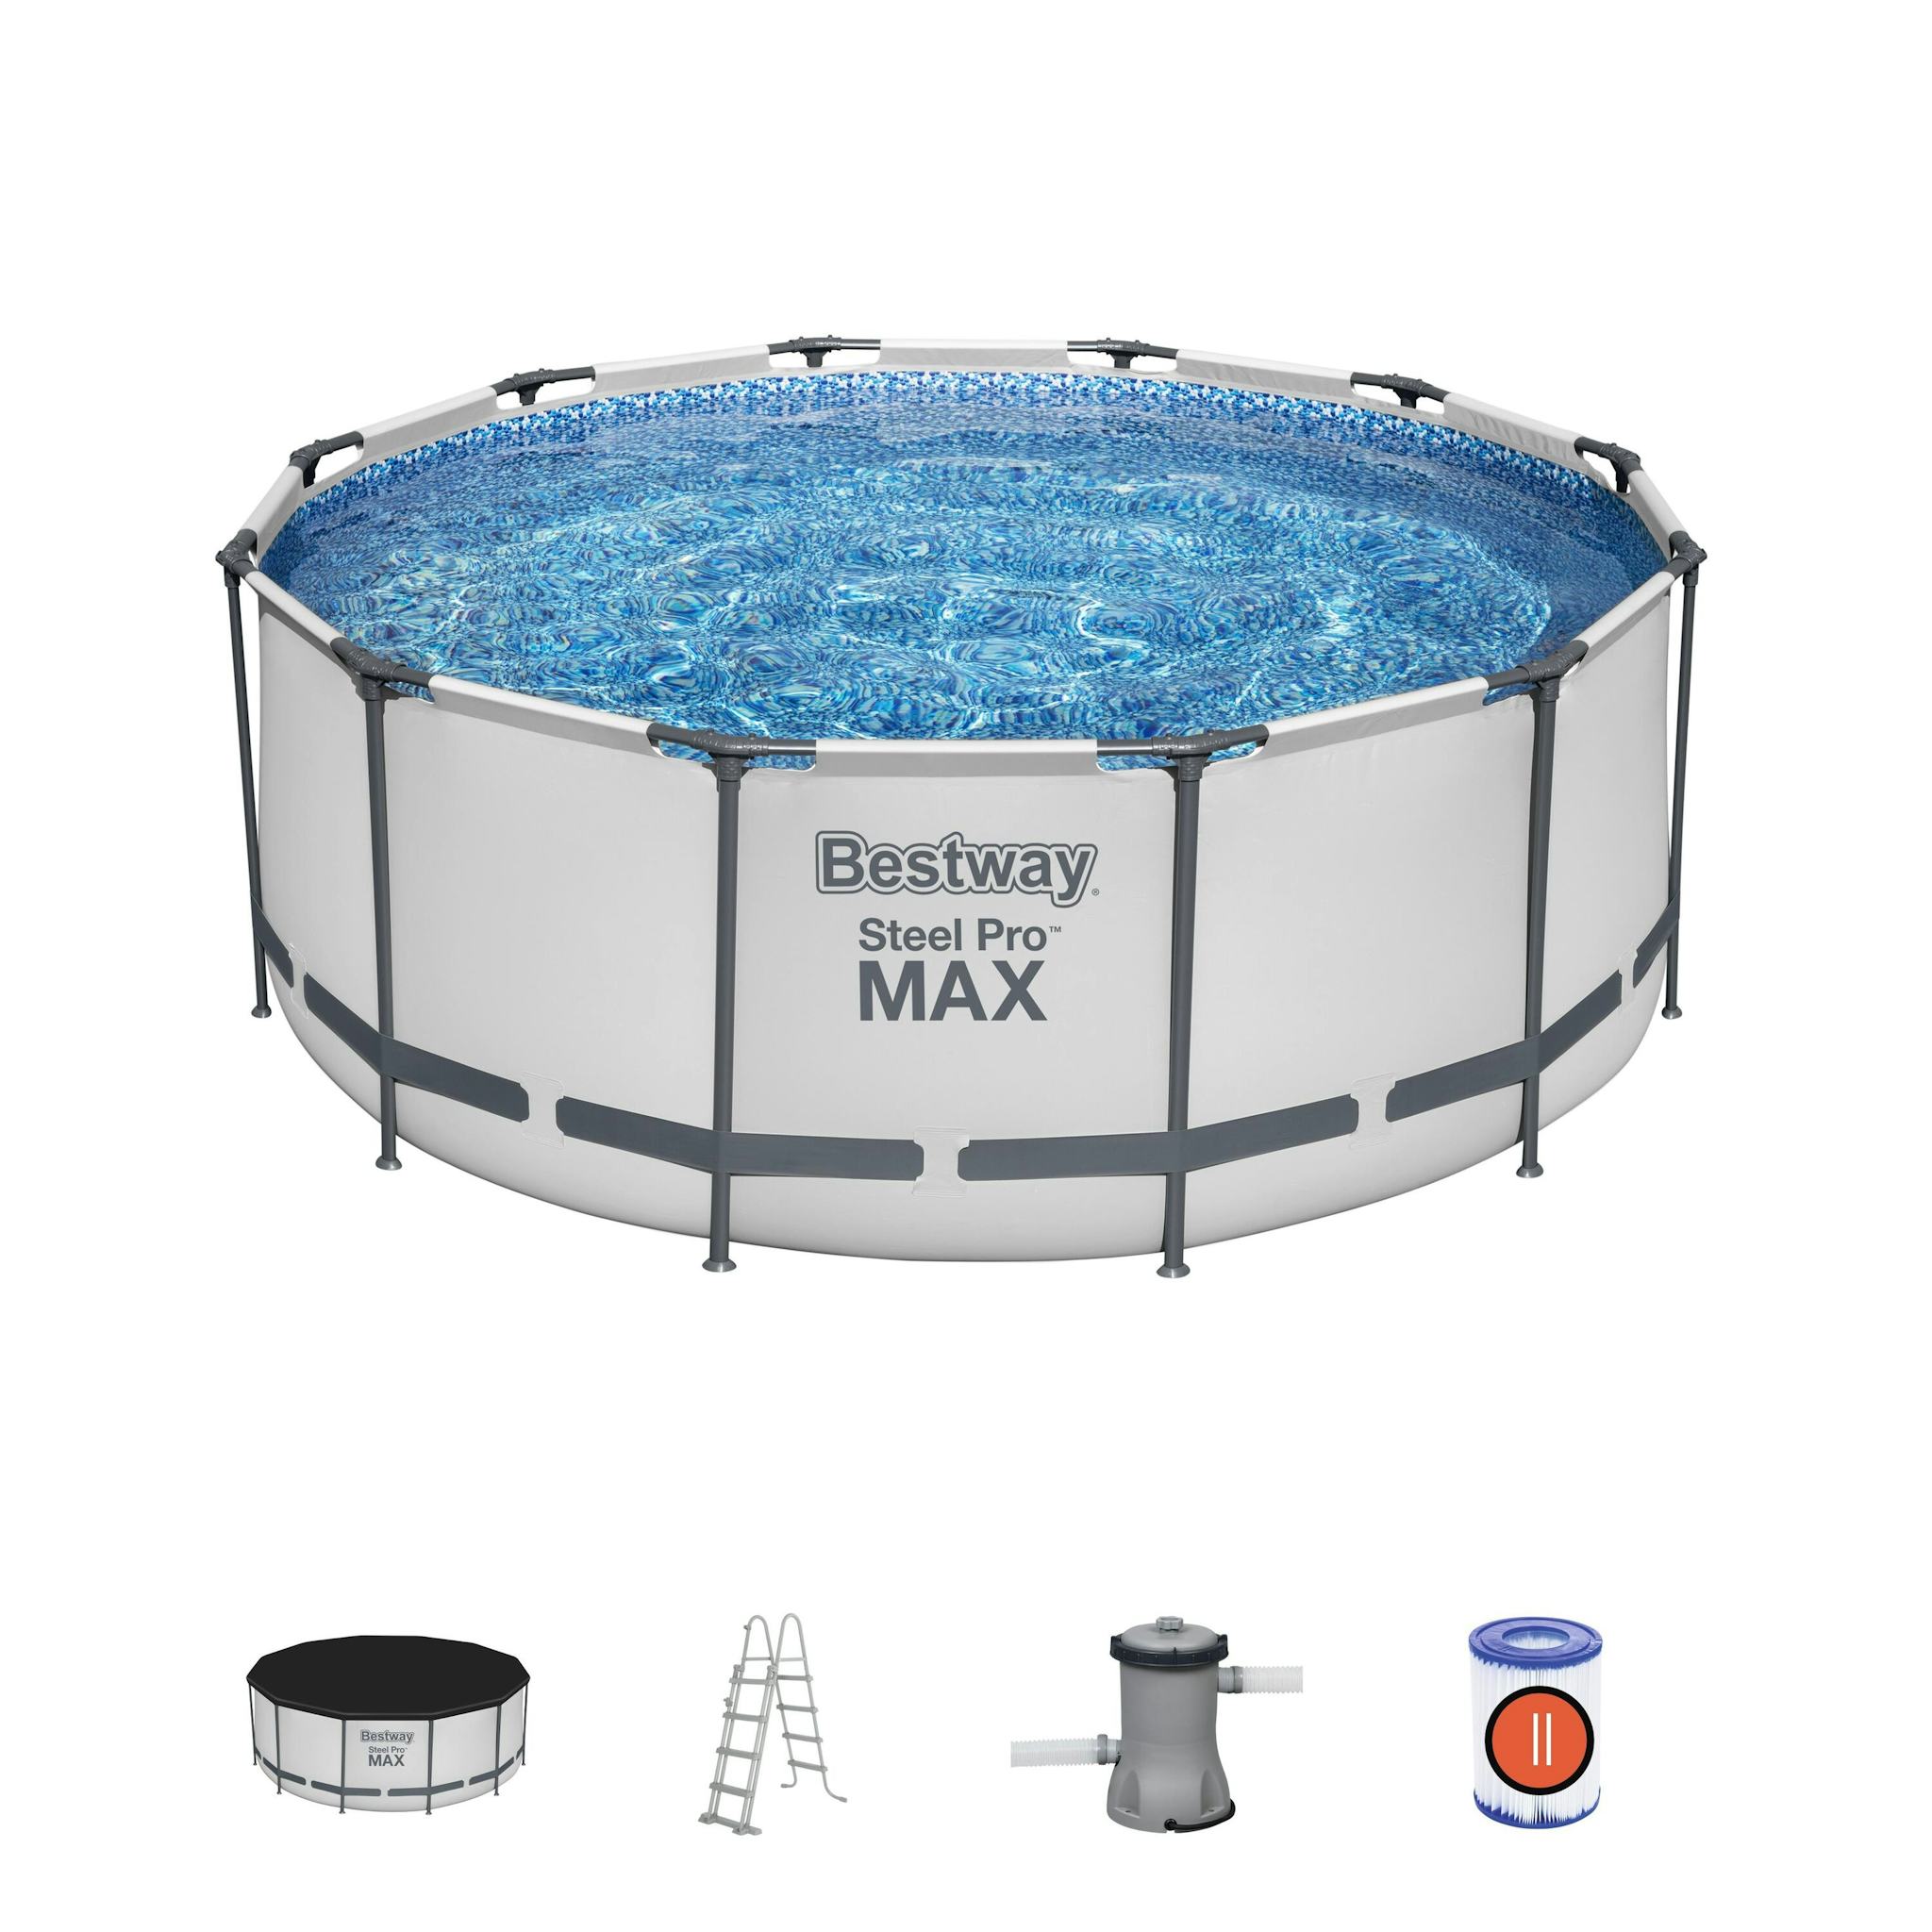 Bovengronds zwembad Steel Pro MAX bovengrondse ronde set van 366x122 cm Bestway 2